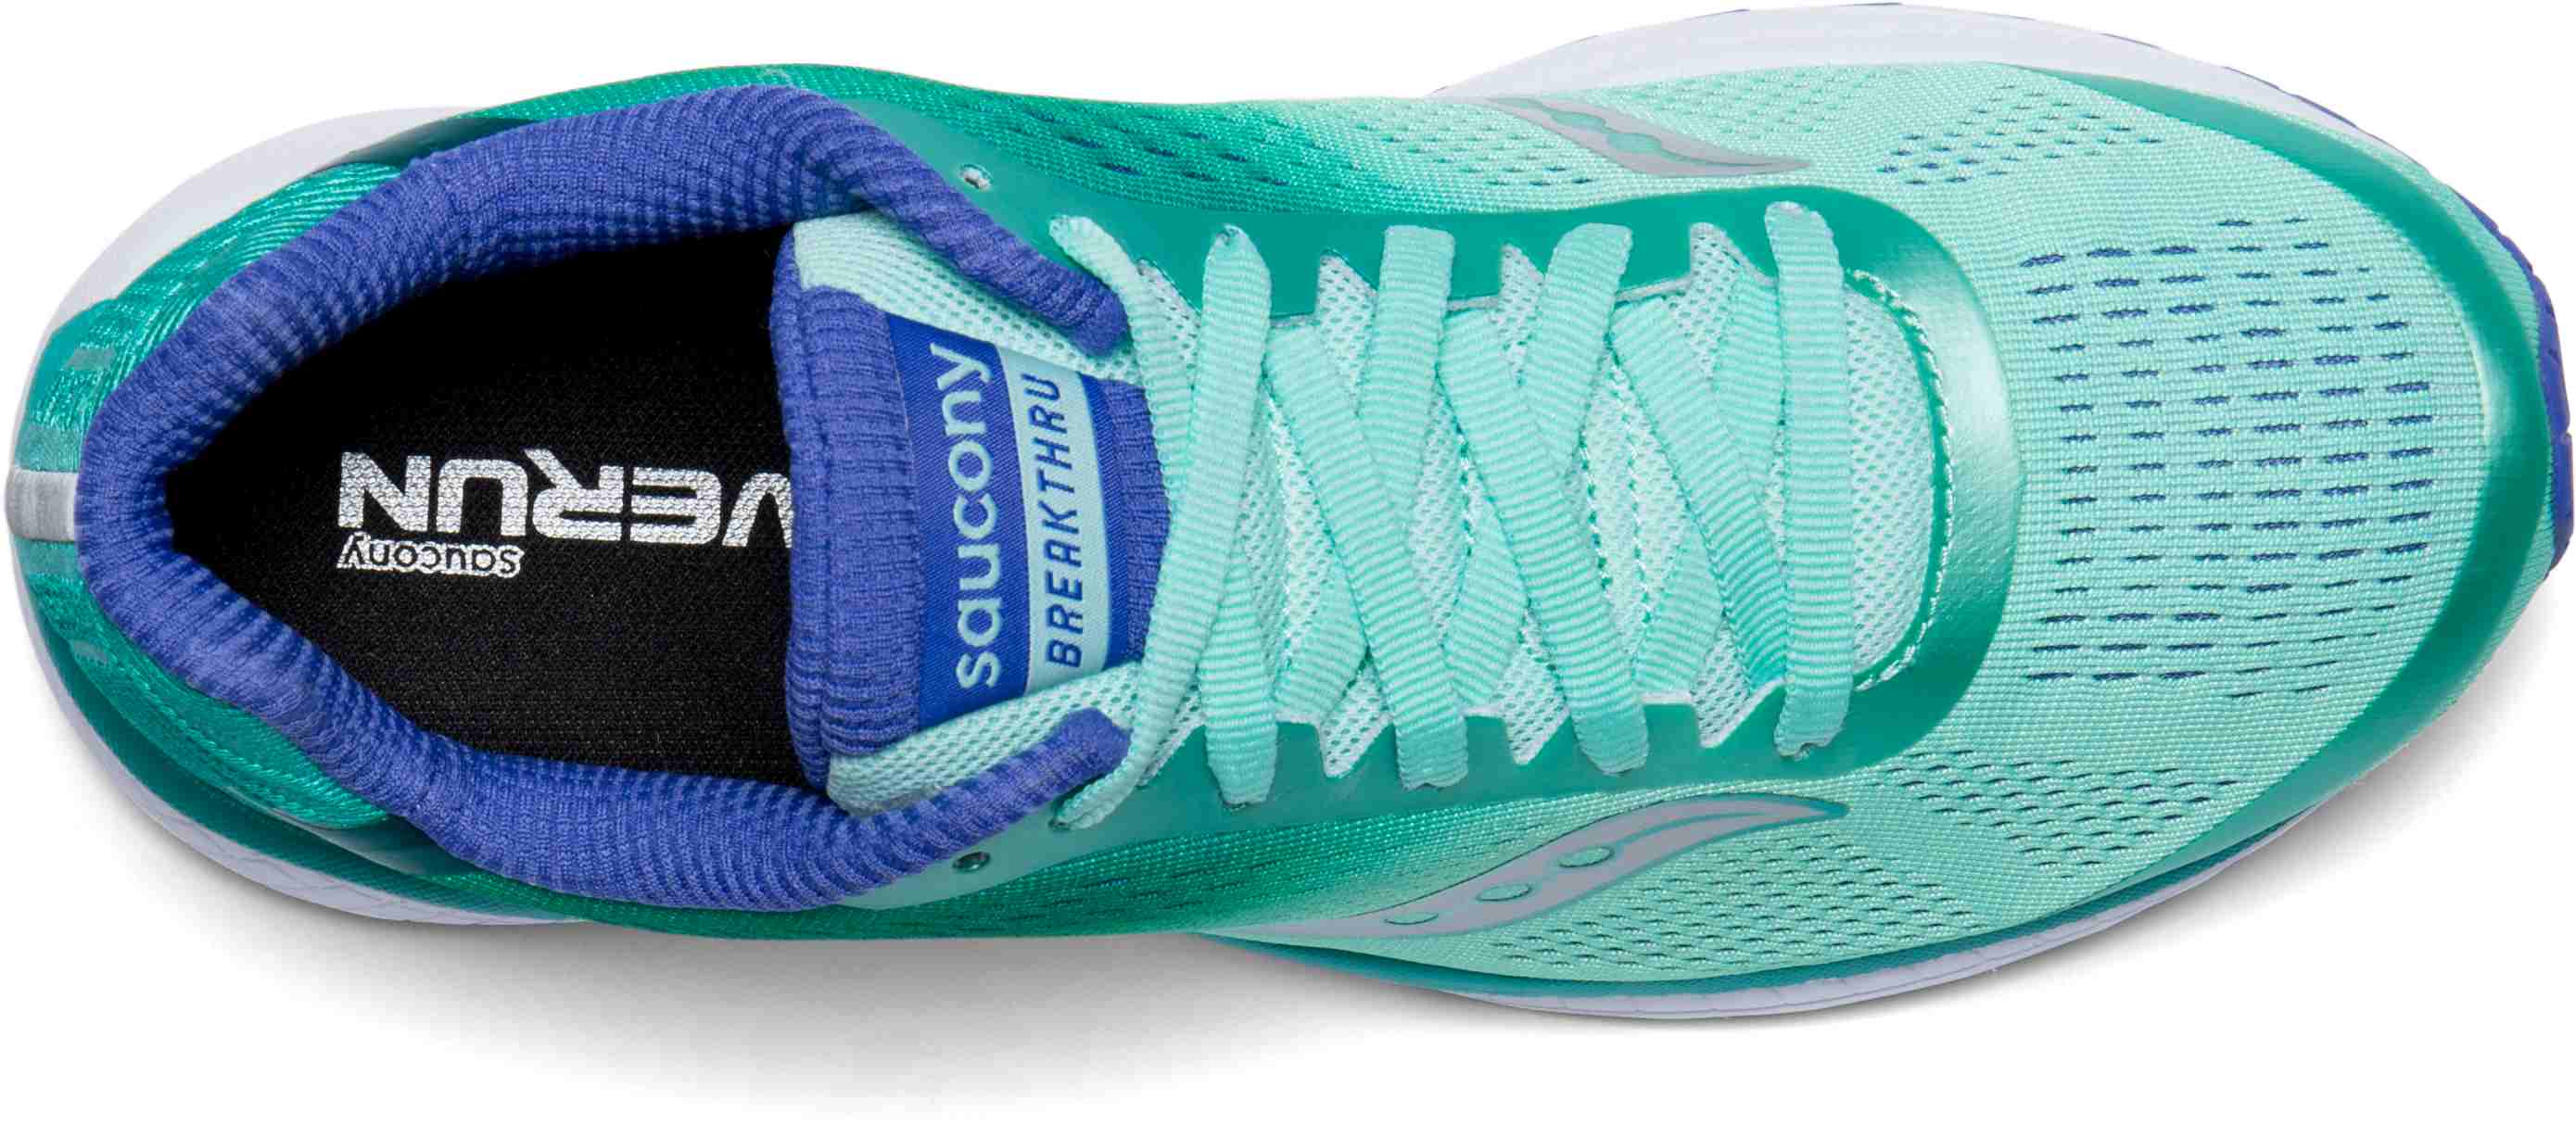 saucony breakthru 4 women's running shoes